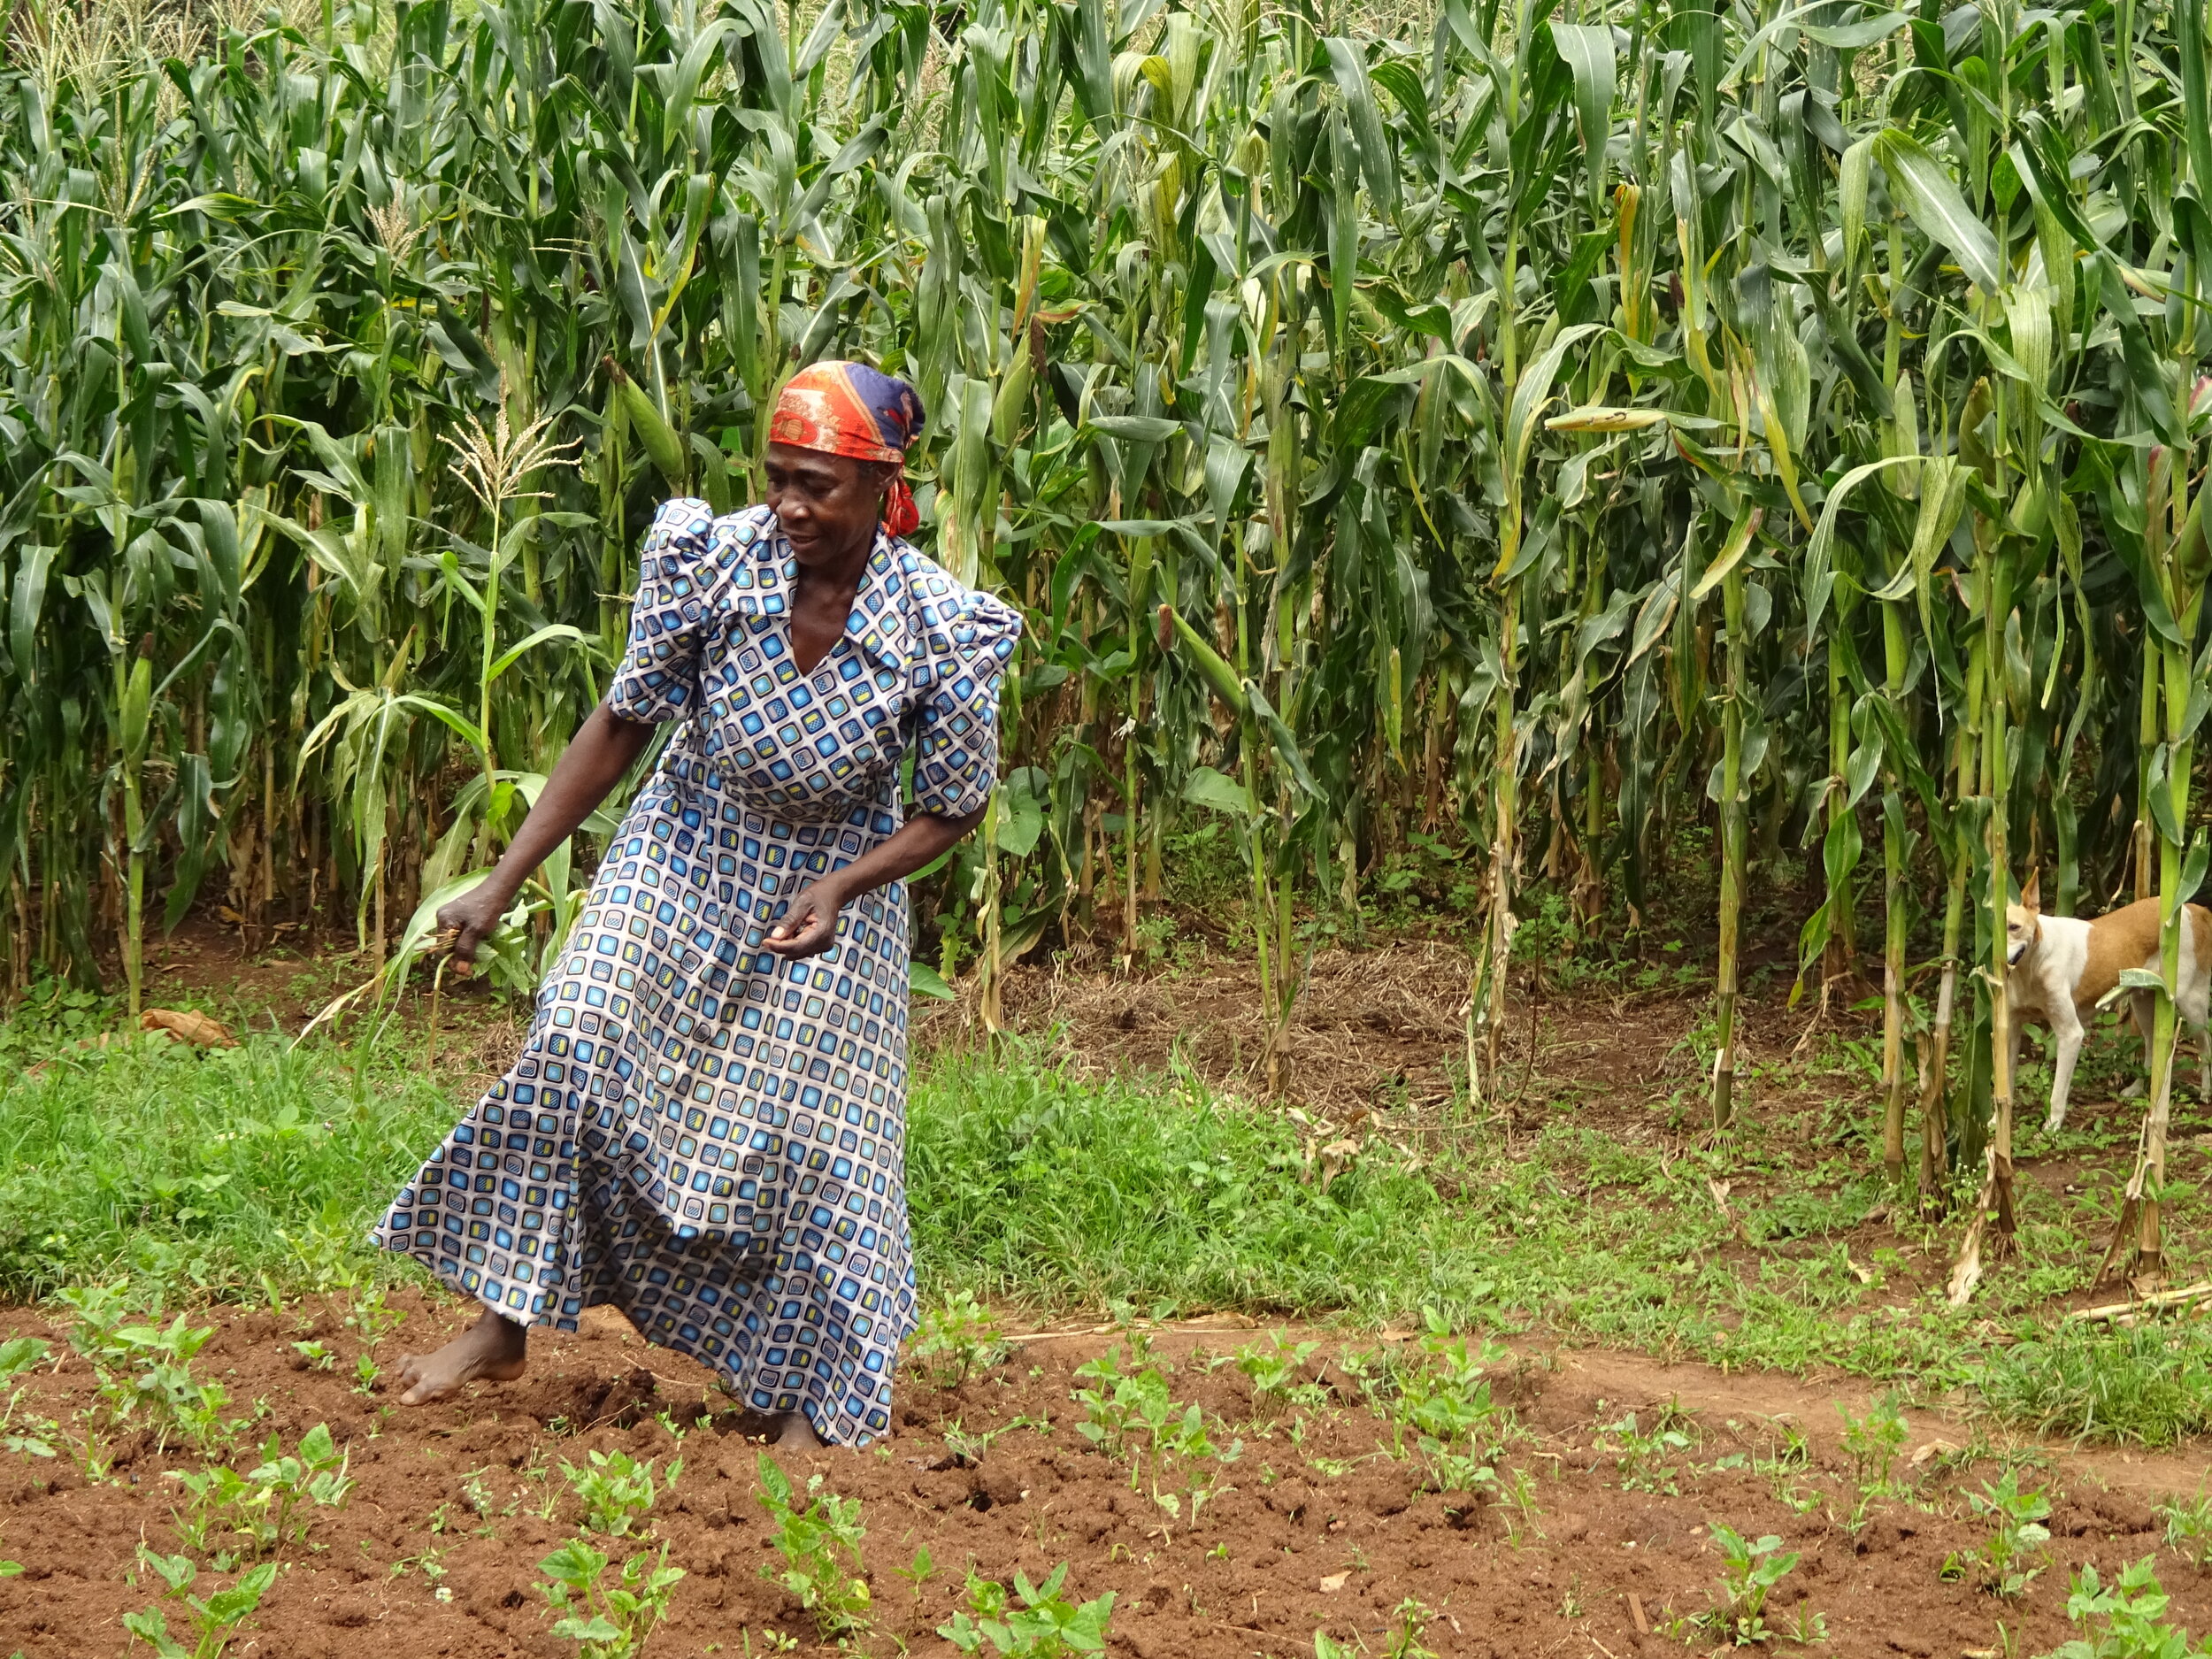 A woman walks through a garden in front of a maize field